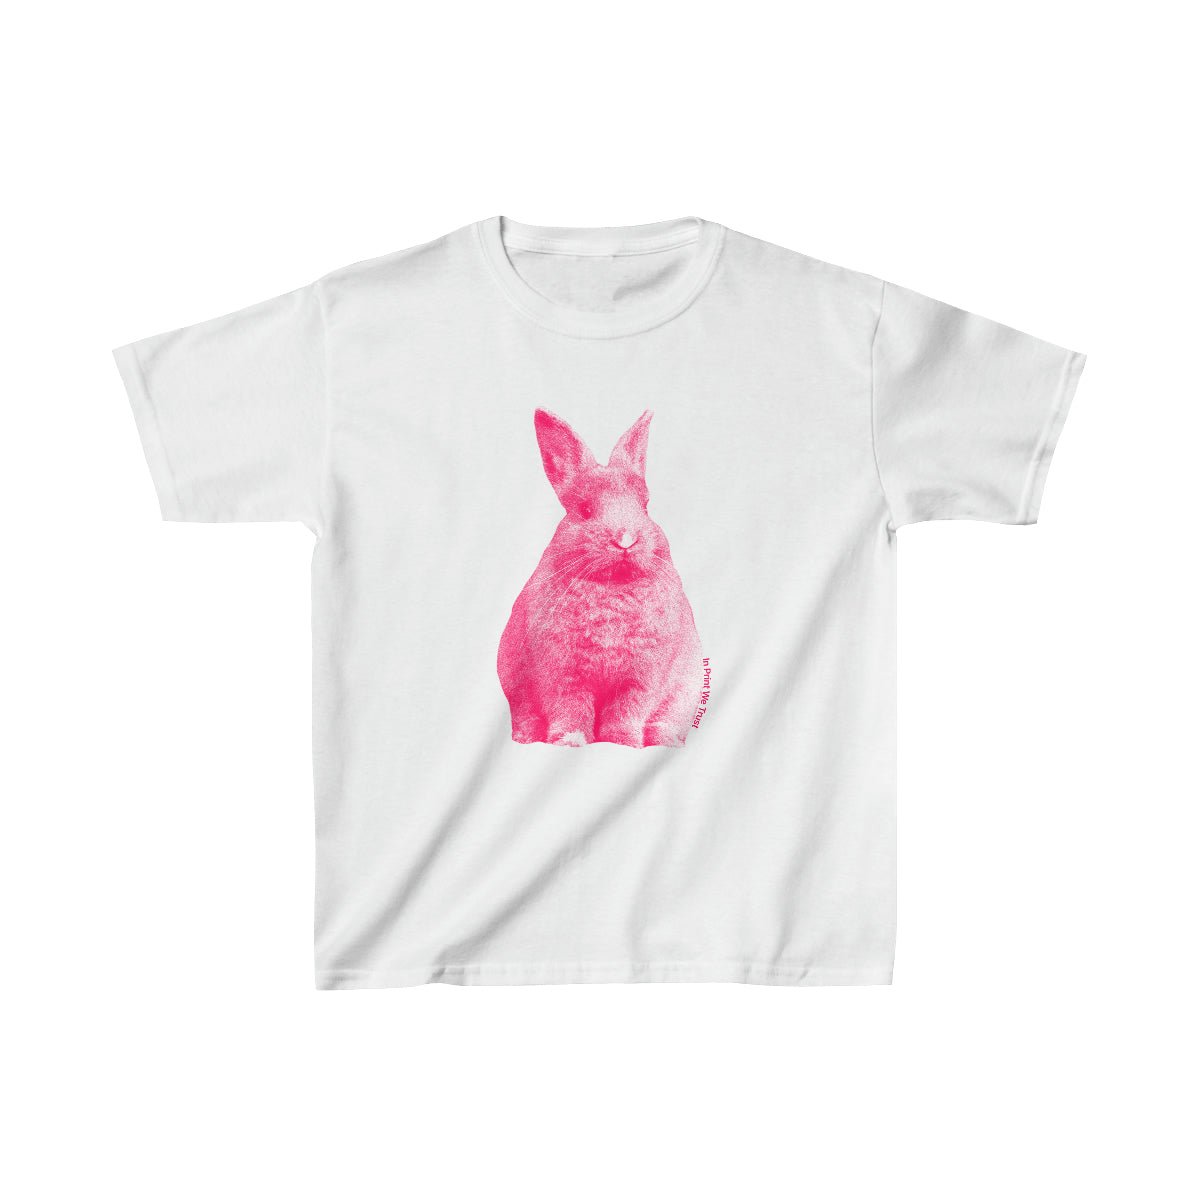 'Bunny Hop' baby tee - In Print We Trust